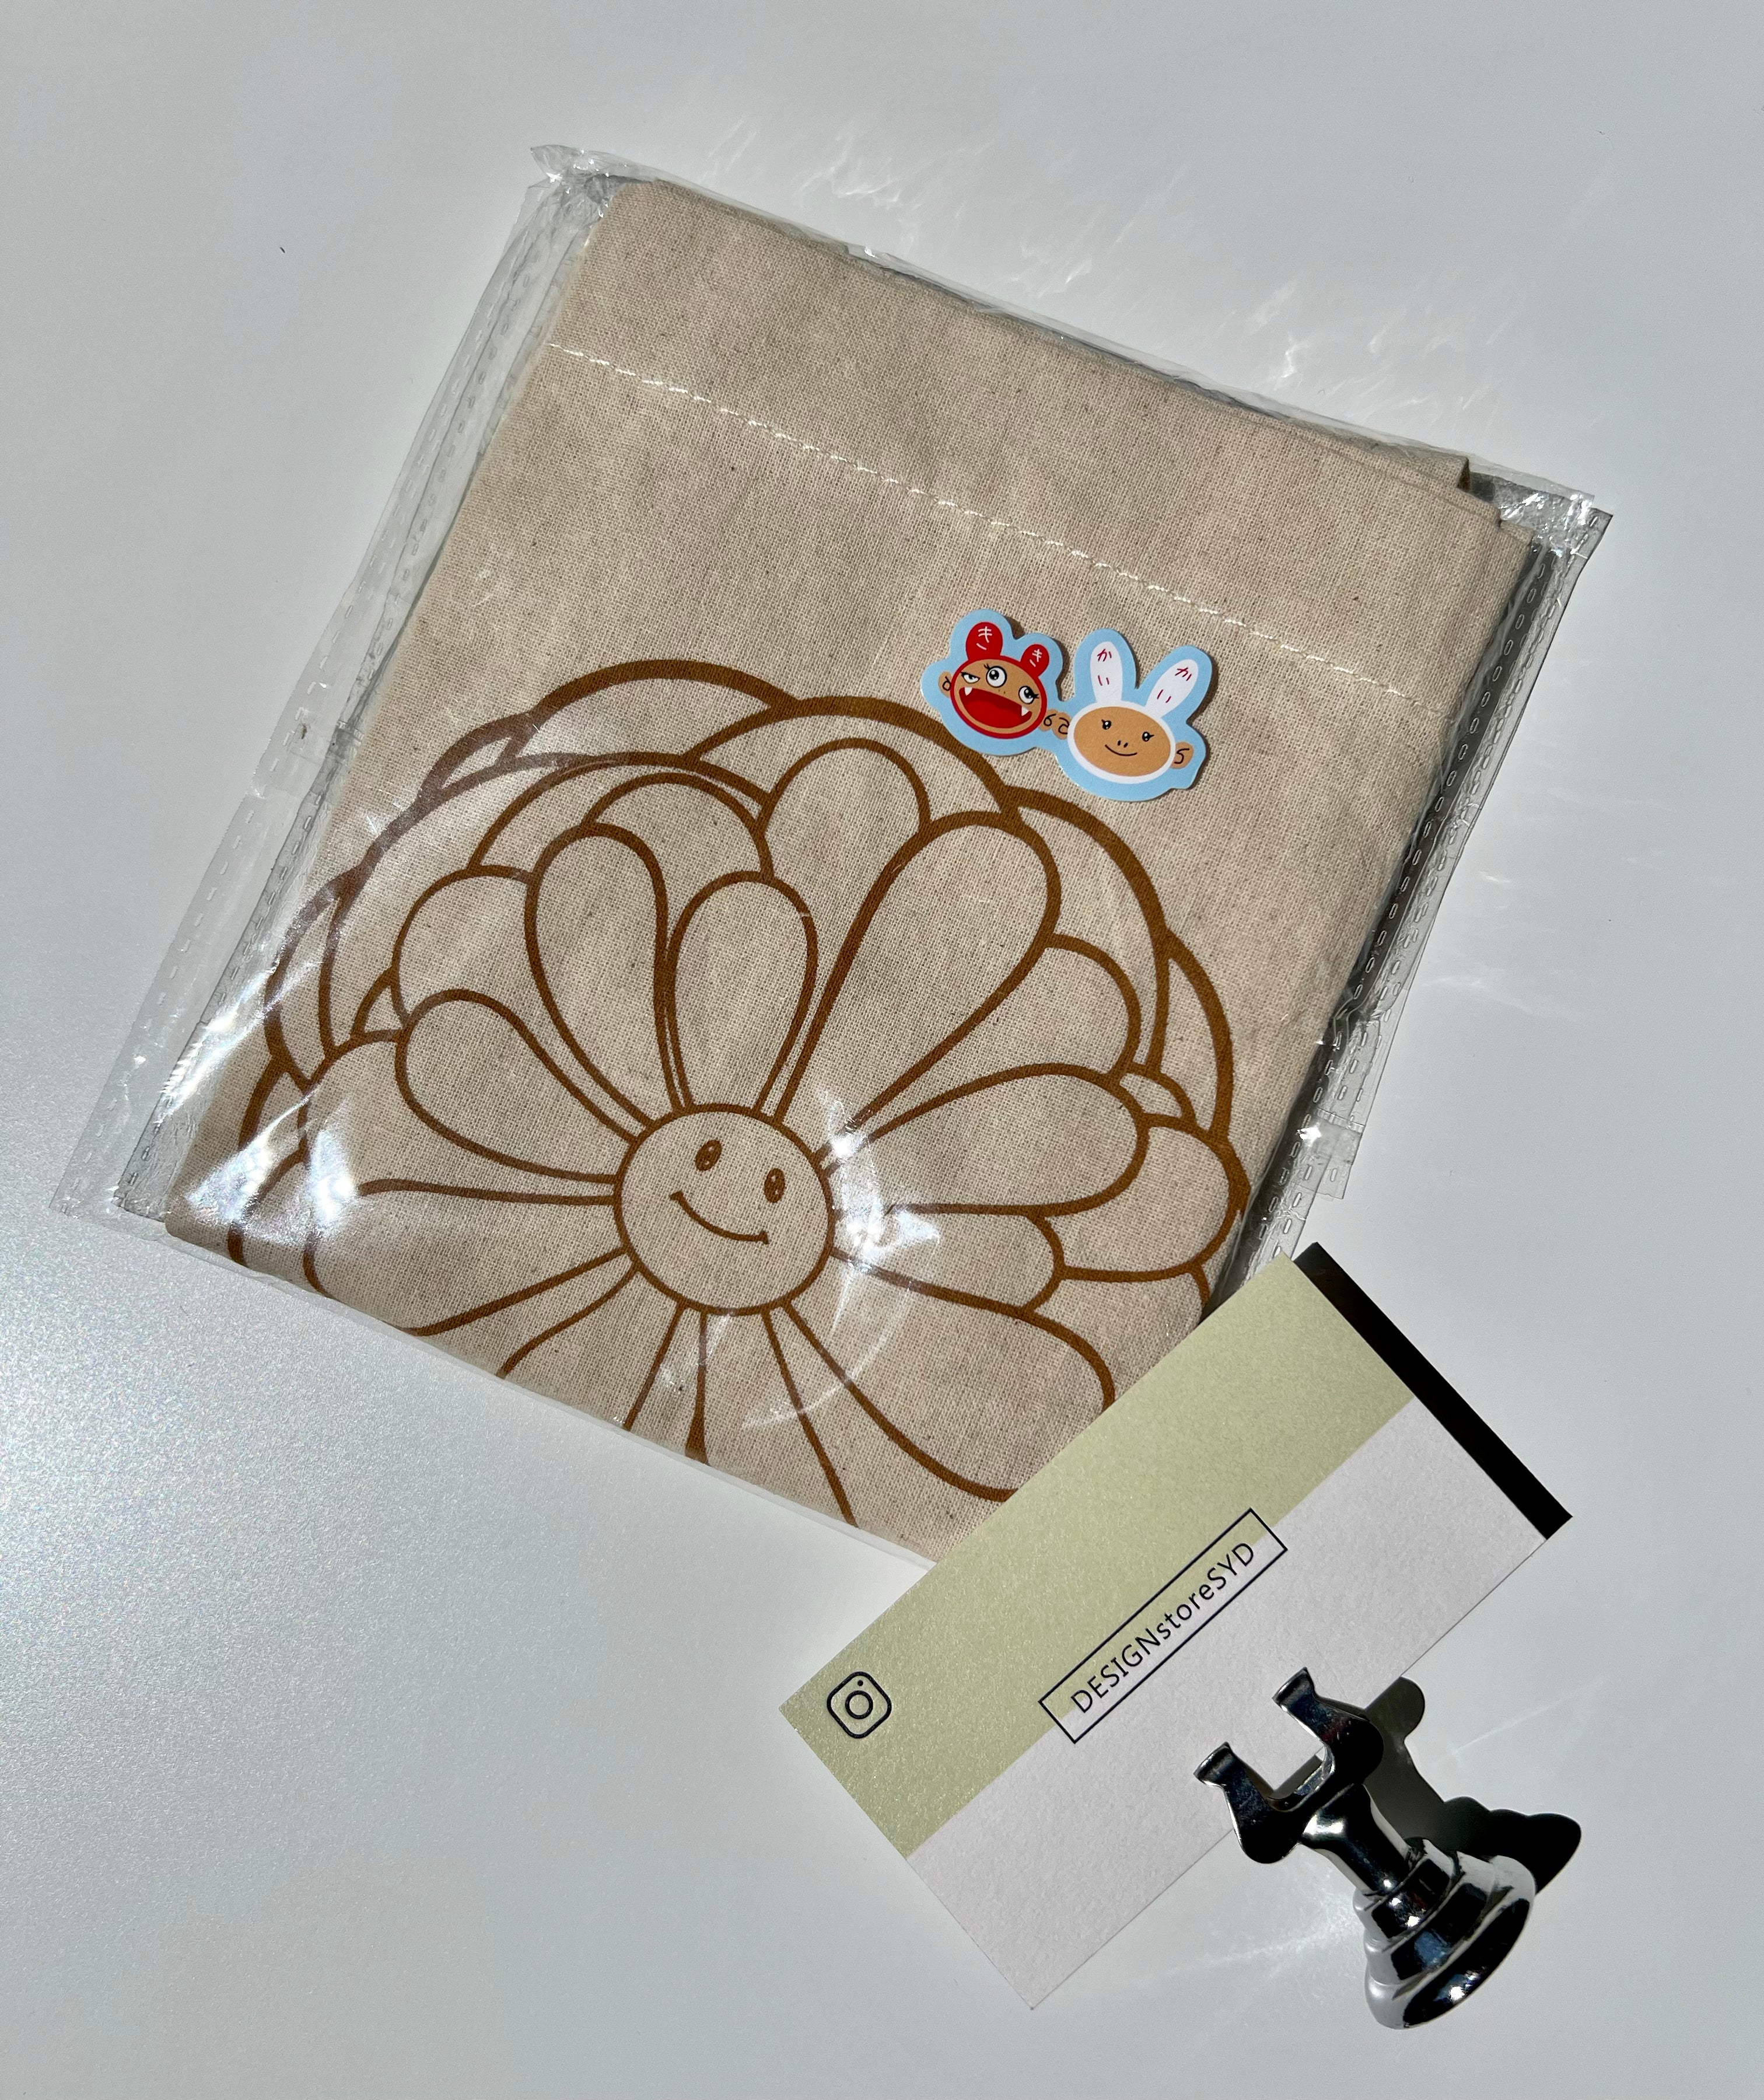 Murakami Flower Mask | Tote Bag